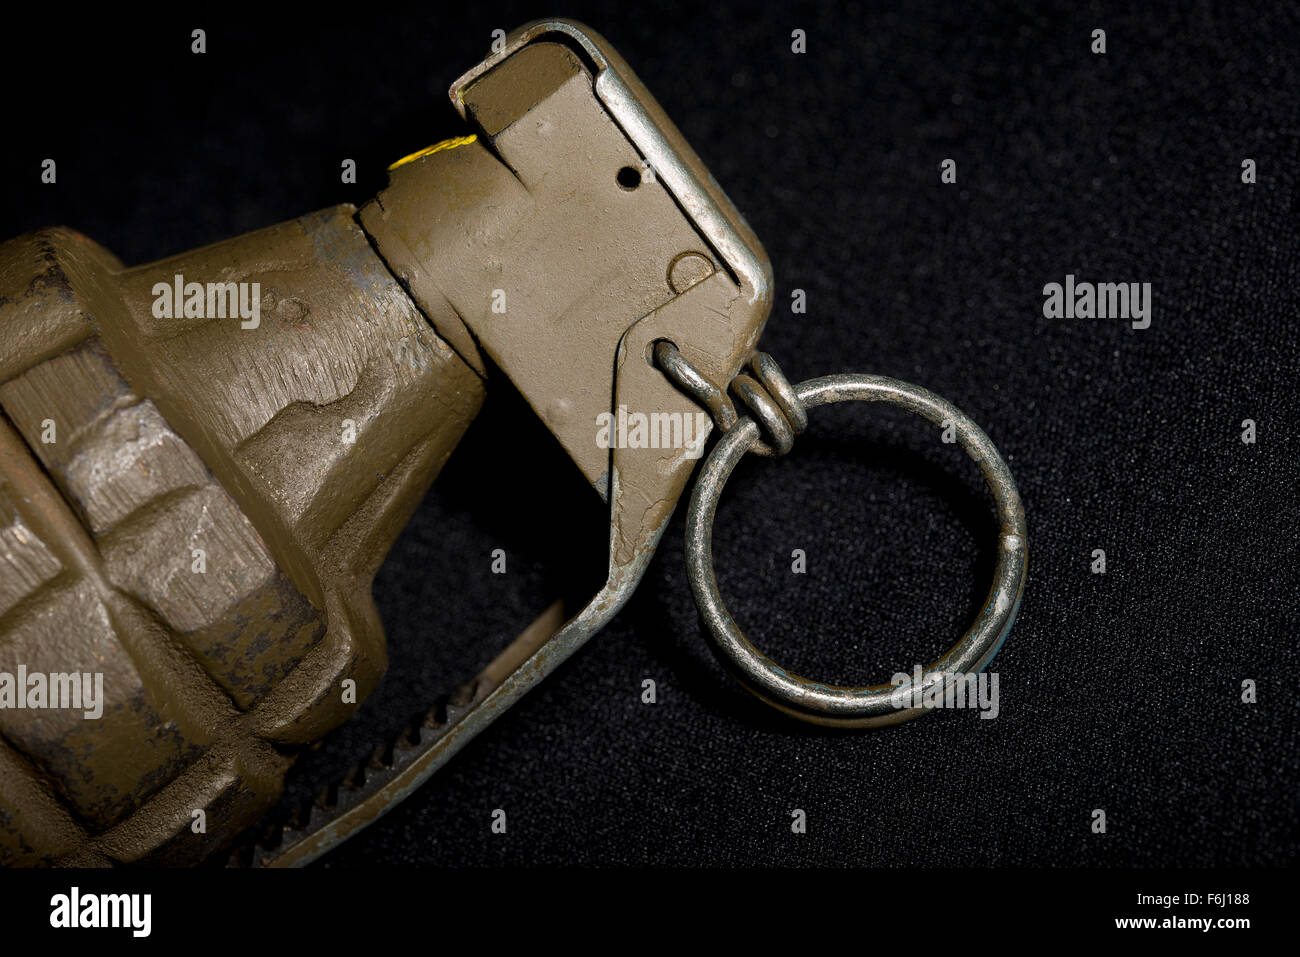 Nahaufnahme von einer Handgranate durch US-Truppen im zweiten Weltkrieg, dem Koreakrieg und den Vietnam-Krieg verwendet. Stockfoto